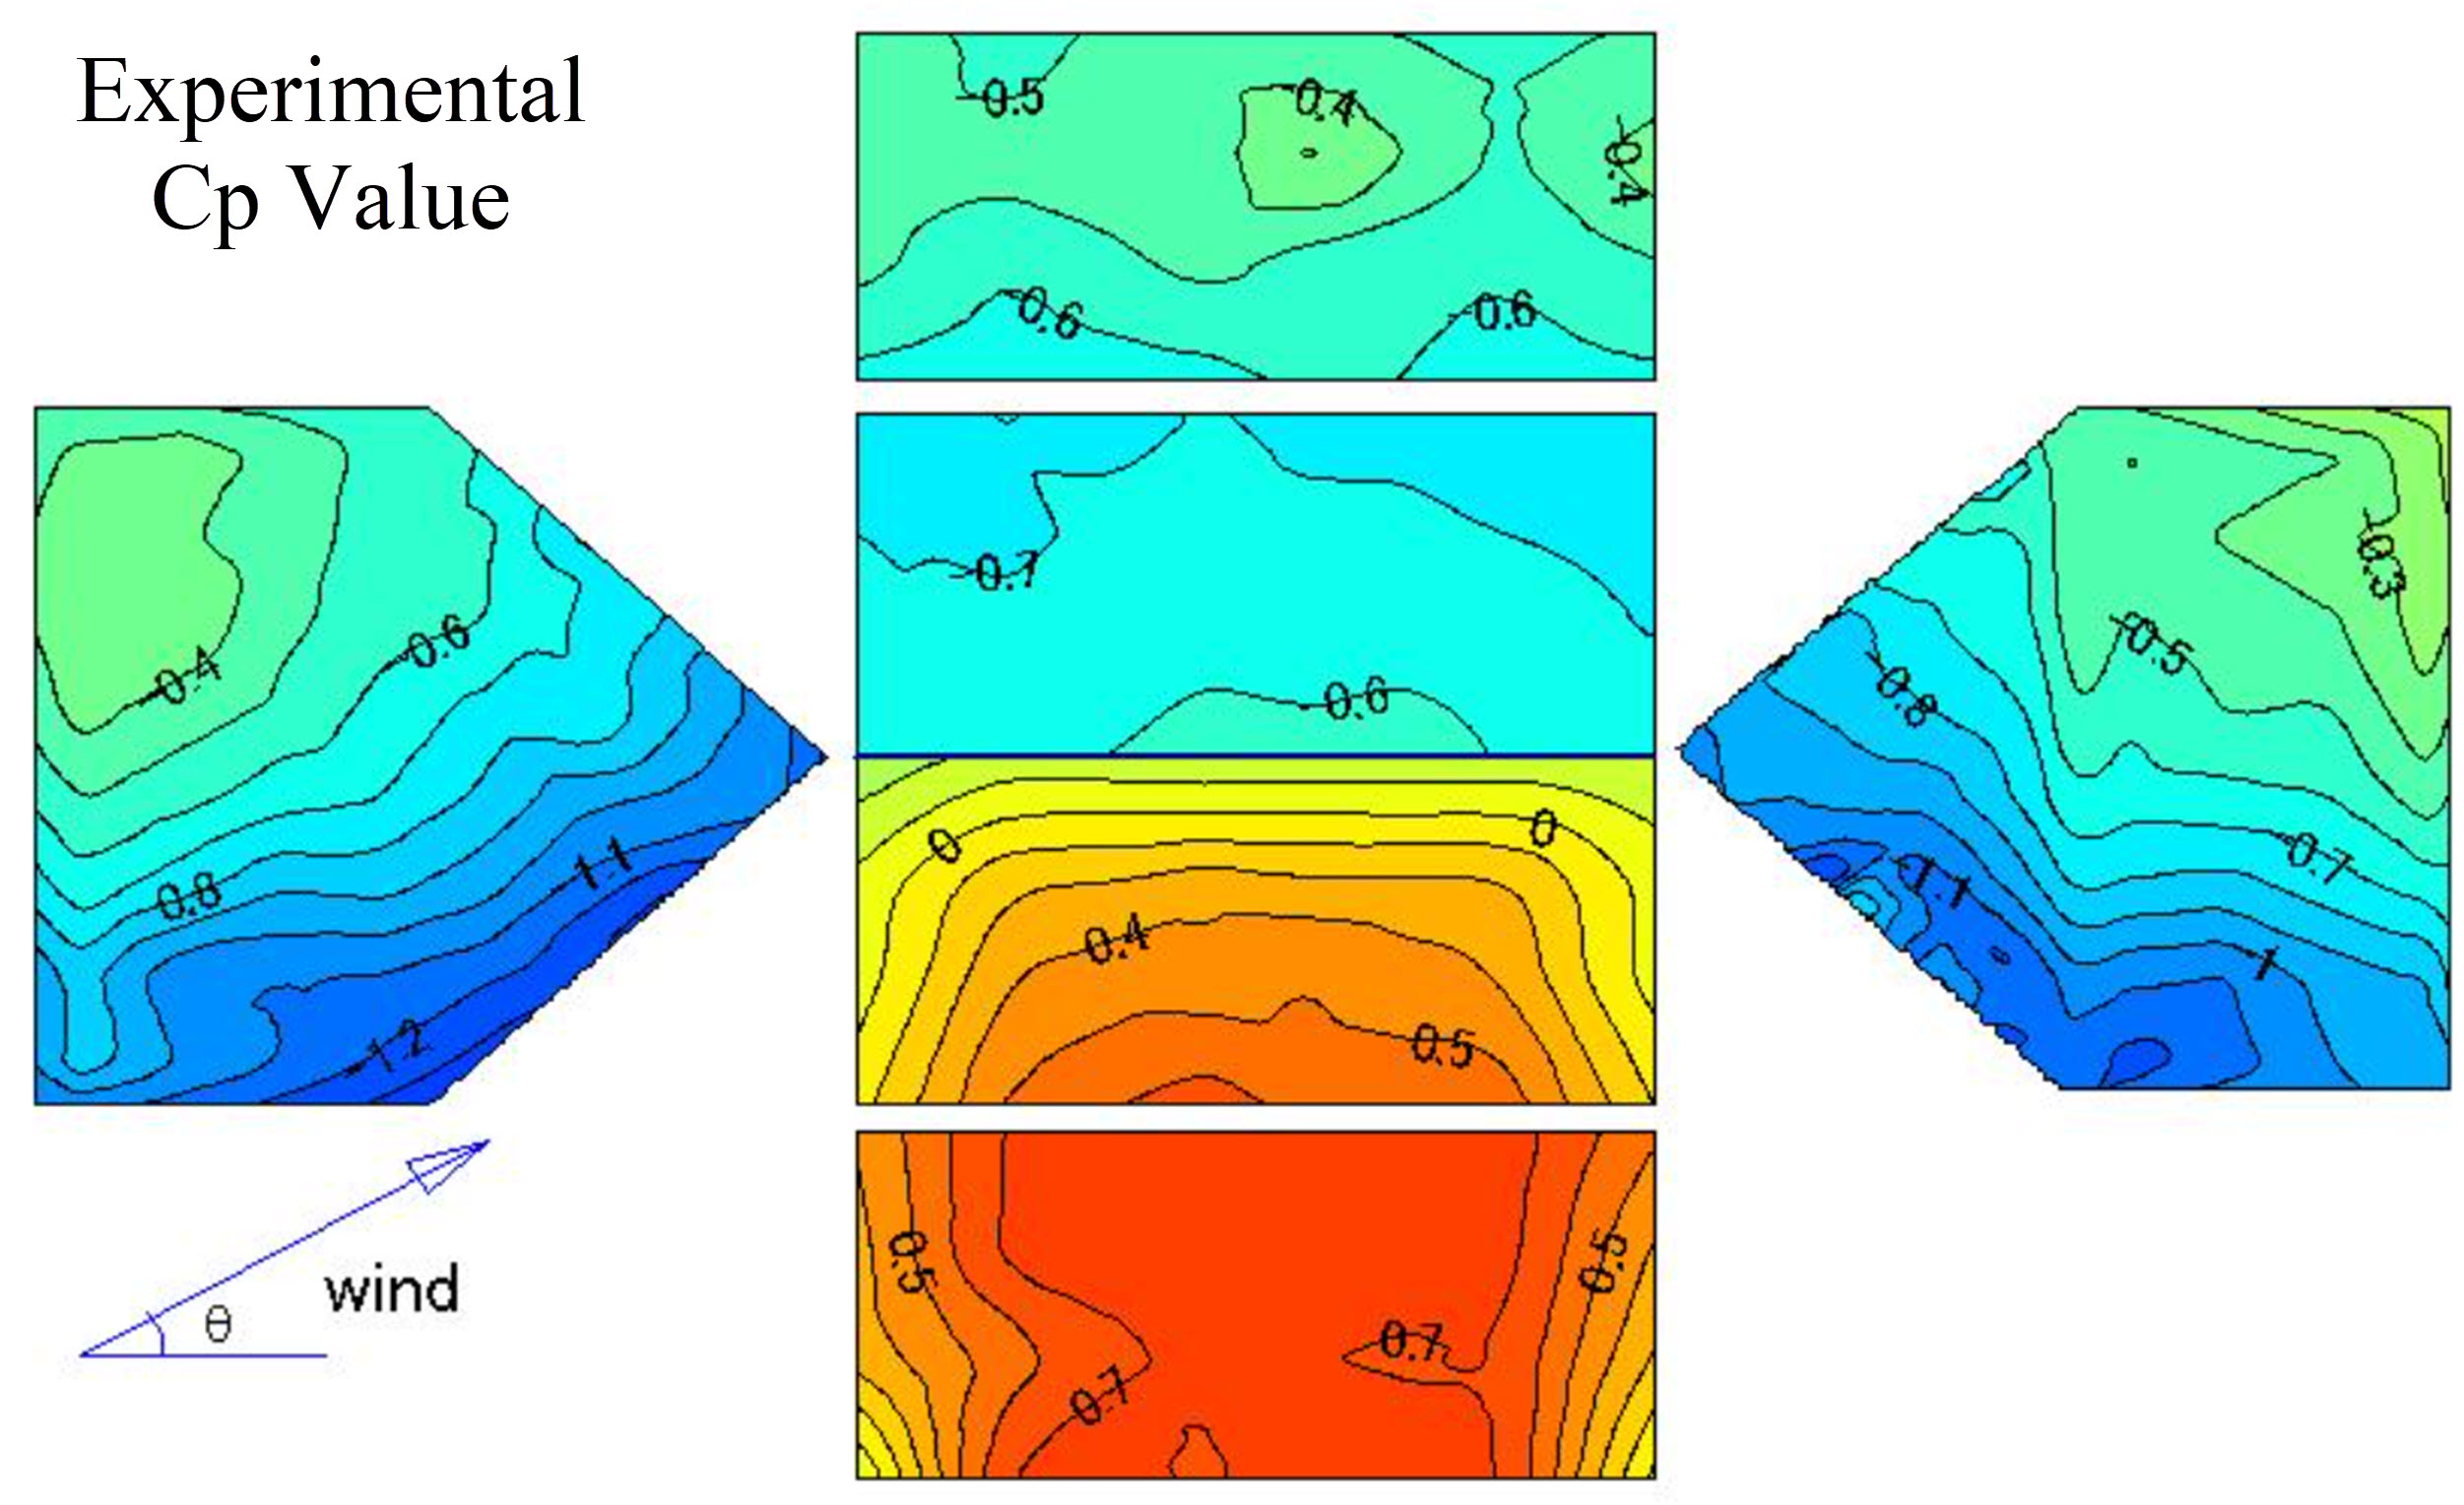 Figura 3: Valore Cp sperimentale basato sul database della galleria del vento giapponese